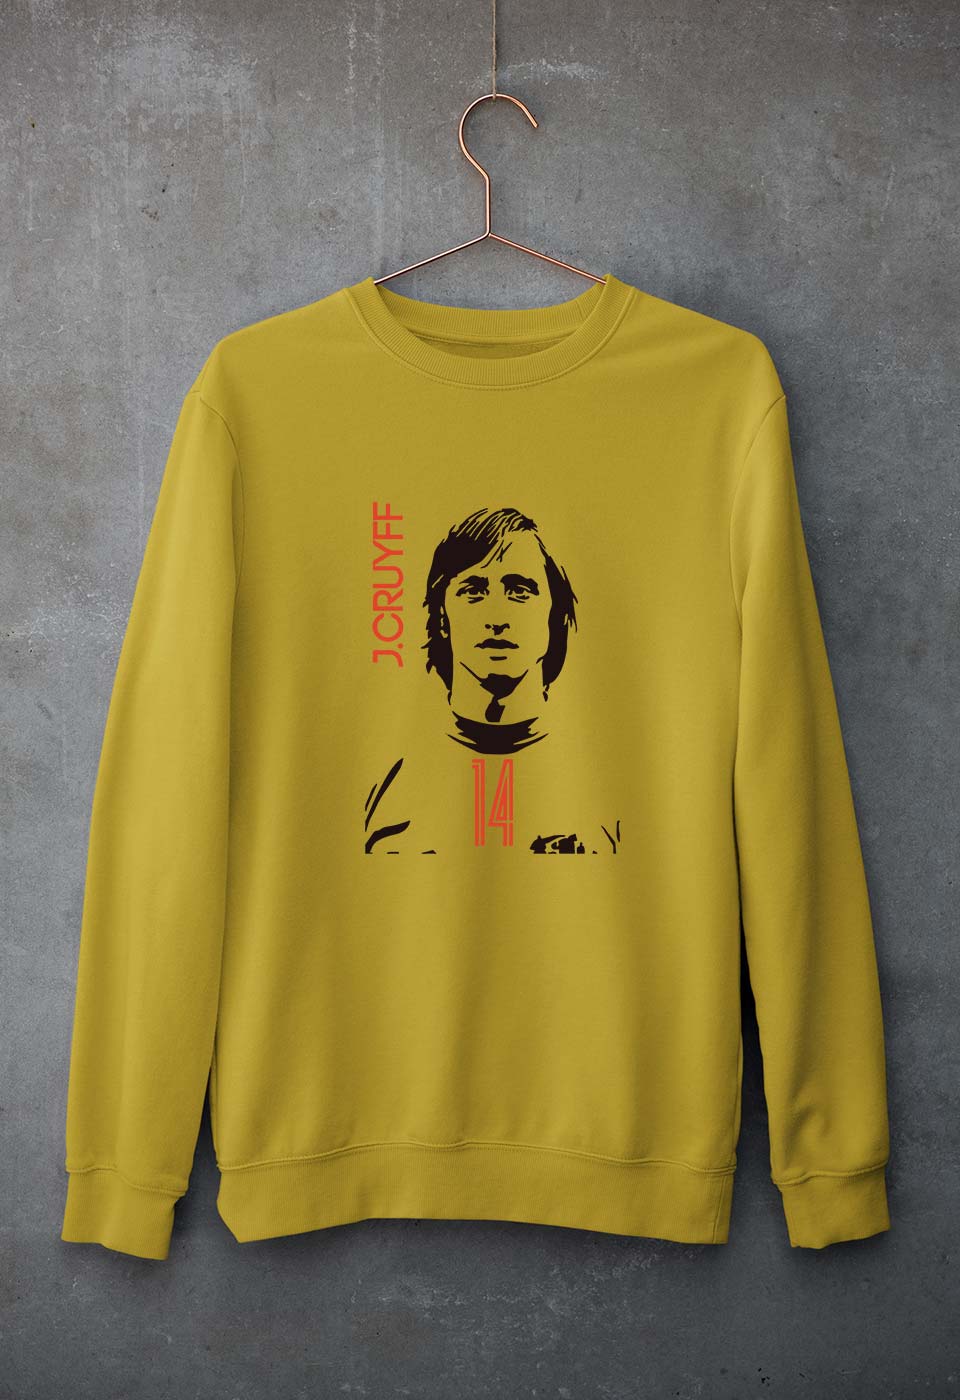 Johan Cruyff Unisex Sweatshirt for Men/Women-S(40 Inches)-Mustard Yellow-Ektarfa.online